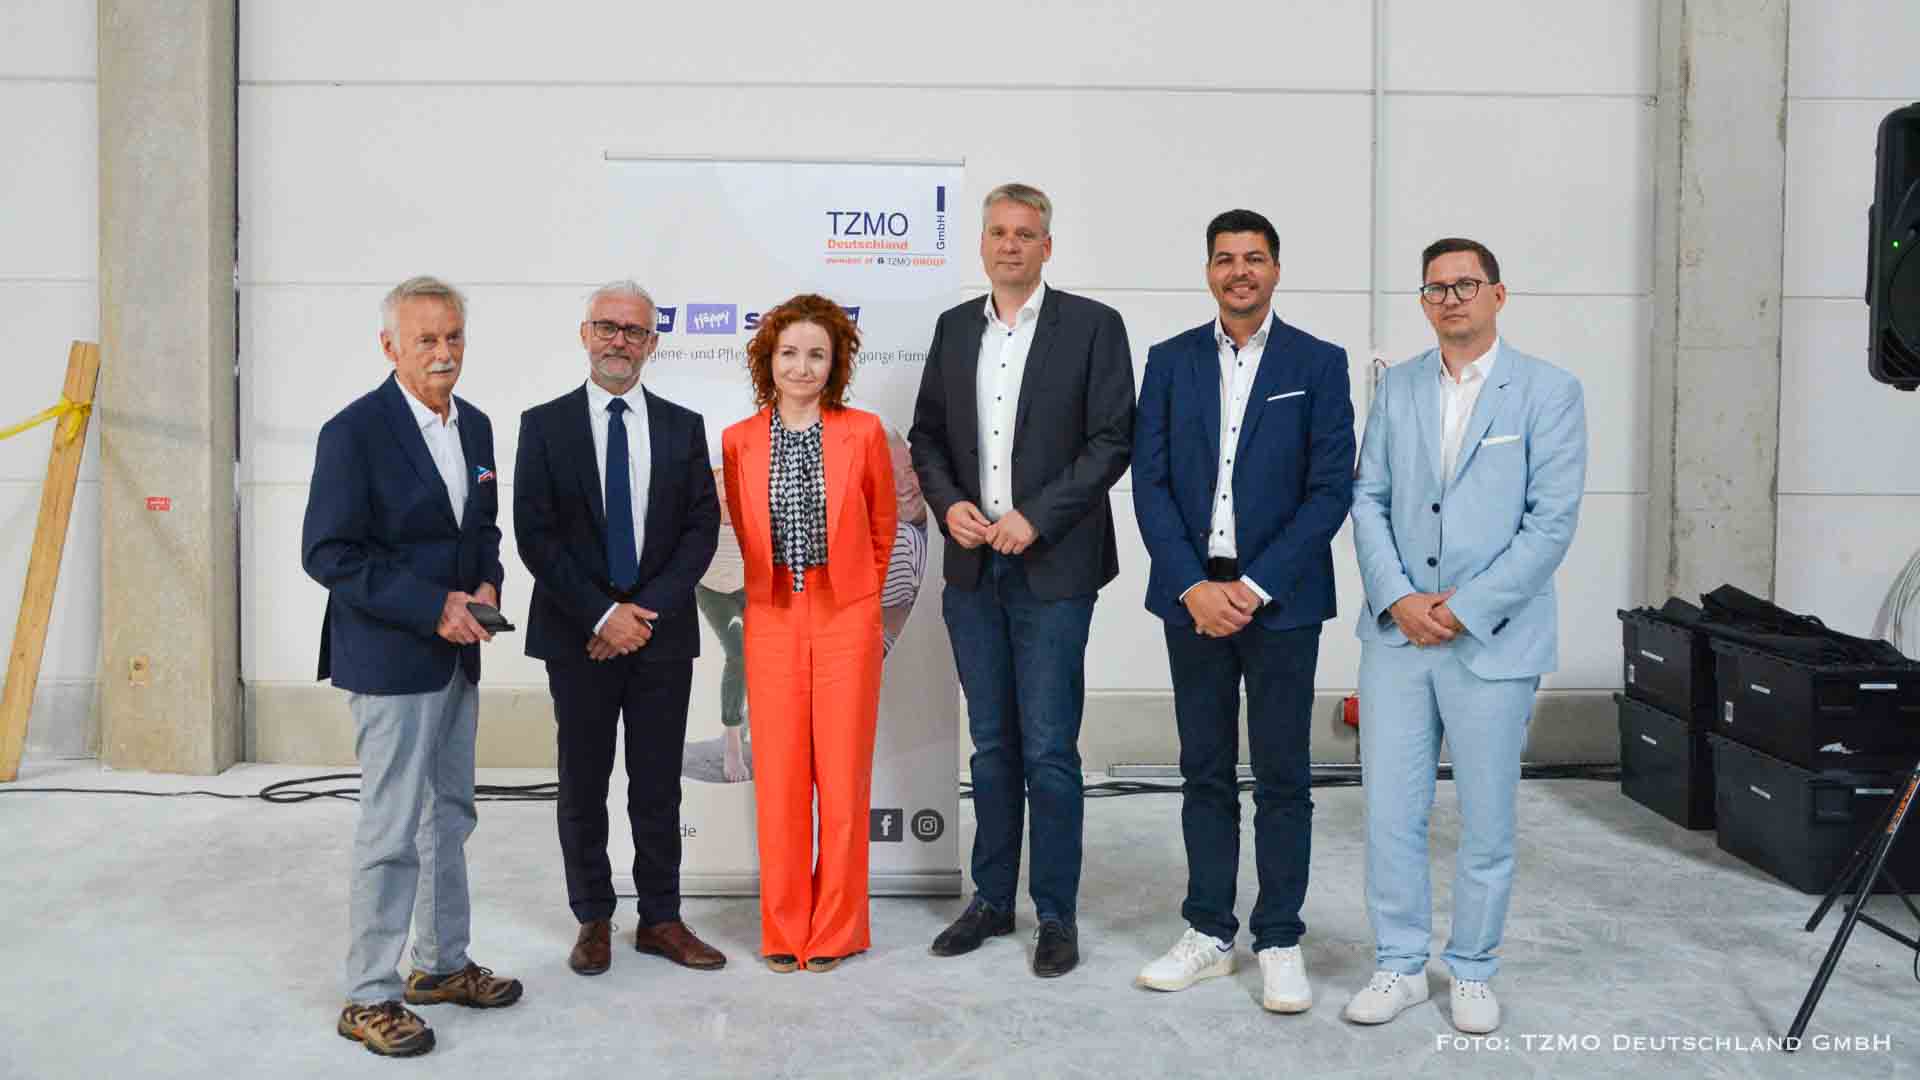 TZMO Deutschland erweitert seinen Standort in Biesenthal